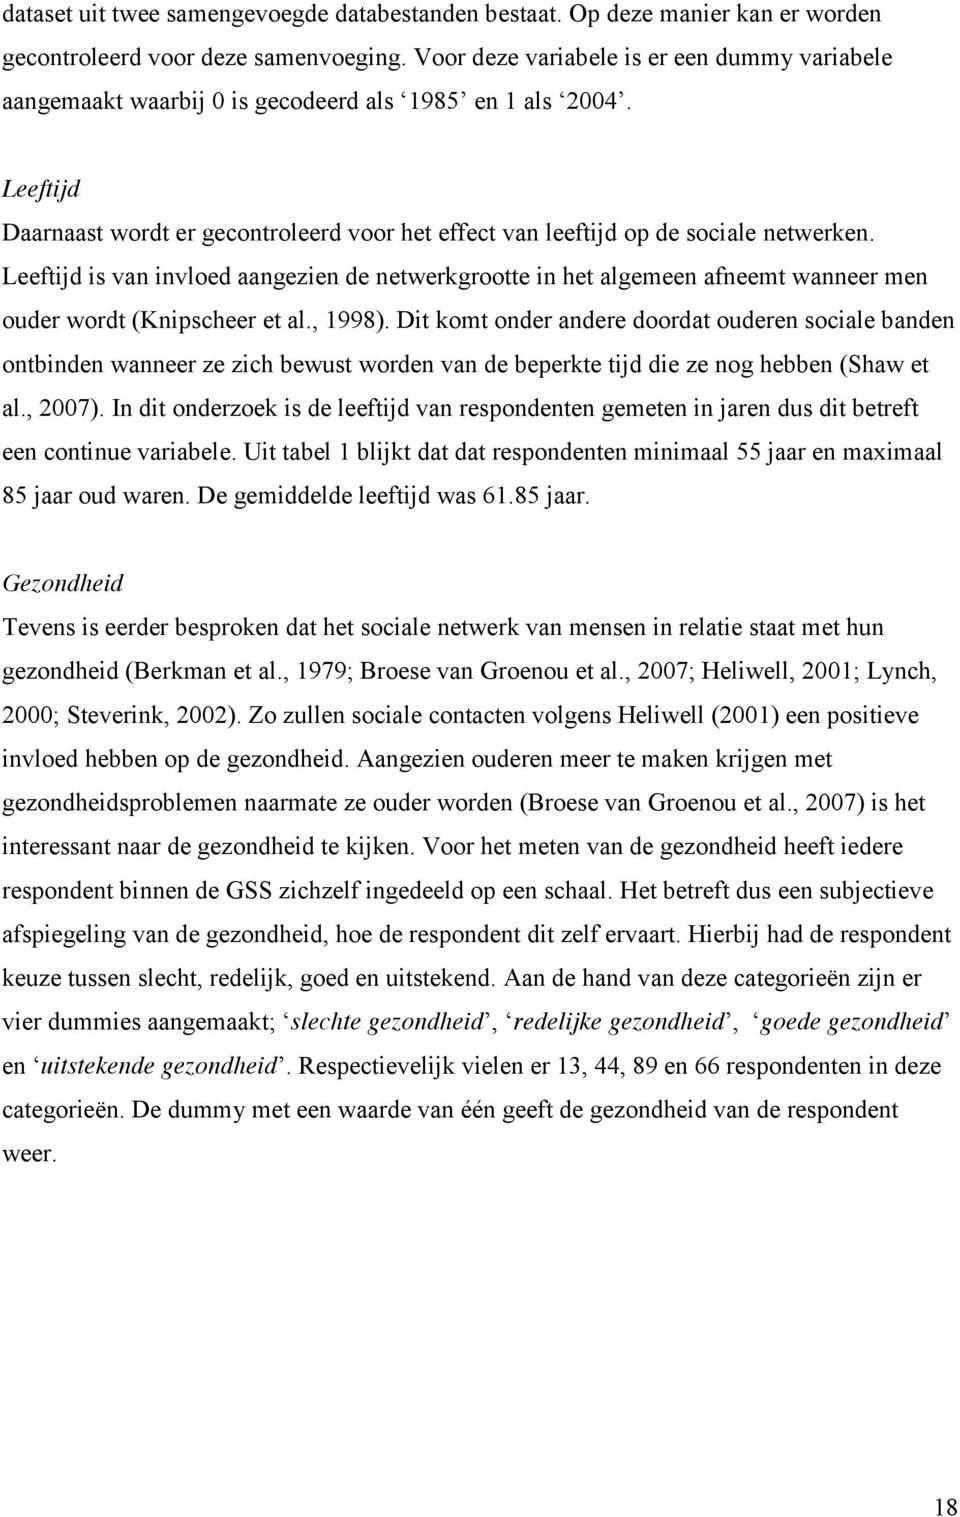 Leeftijd is van invloed aangezien de netwerkgrootte in het algemeen afneemt wanneer men ouder wordt (Knipscheer et al., 1998).